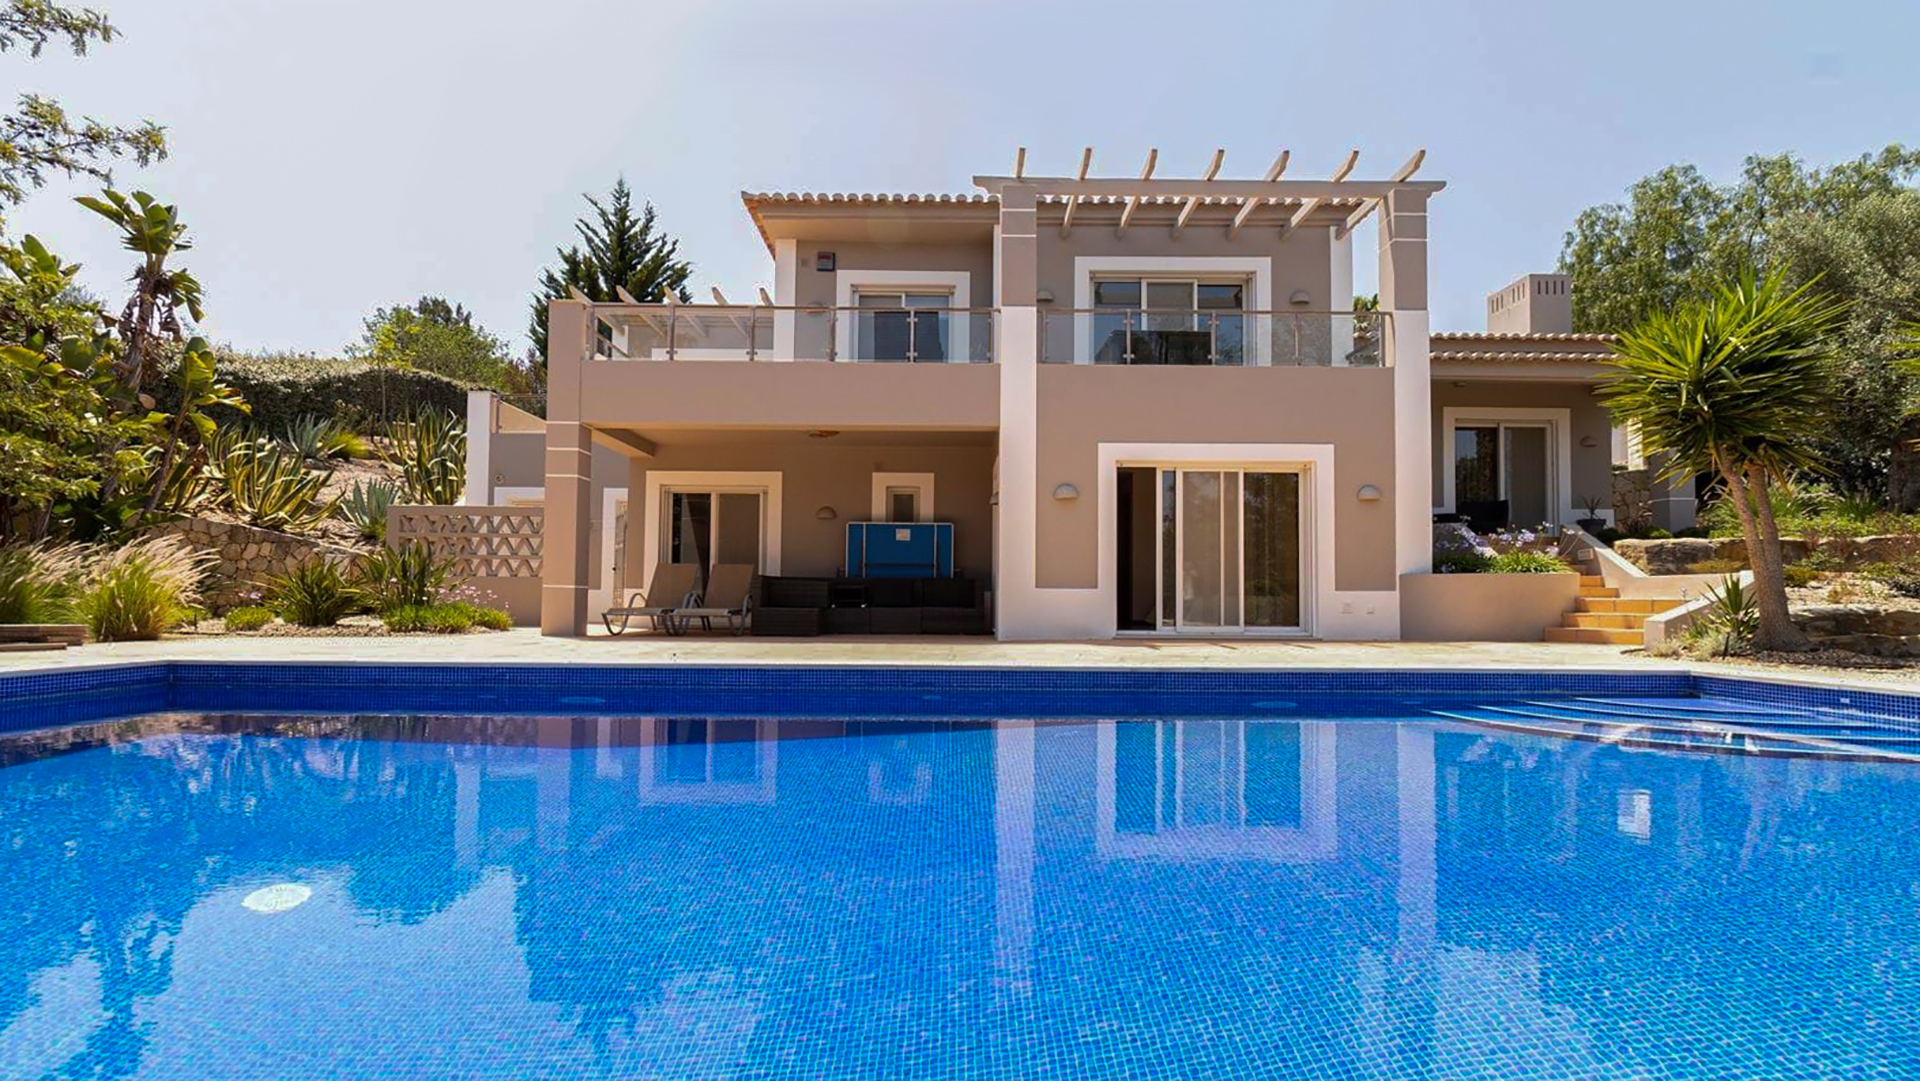 Spacieuse villa de 3 chambres avec piscine dans un complexe de golf près de Carvoeiro, ouest de l'Algarve | PCG2148 Villa de 3 chambres avec salles de bains privatives et piscine, entourée d'un grand jardin bien entretenu dans un complexe de golf populaire. Parfait comme résidence permanente et pour la location.